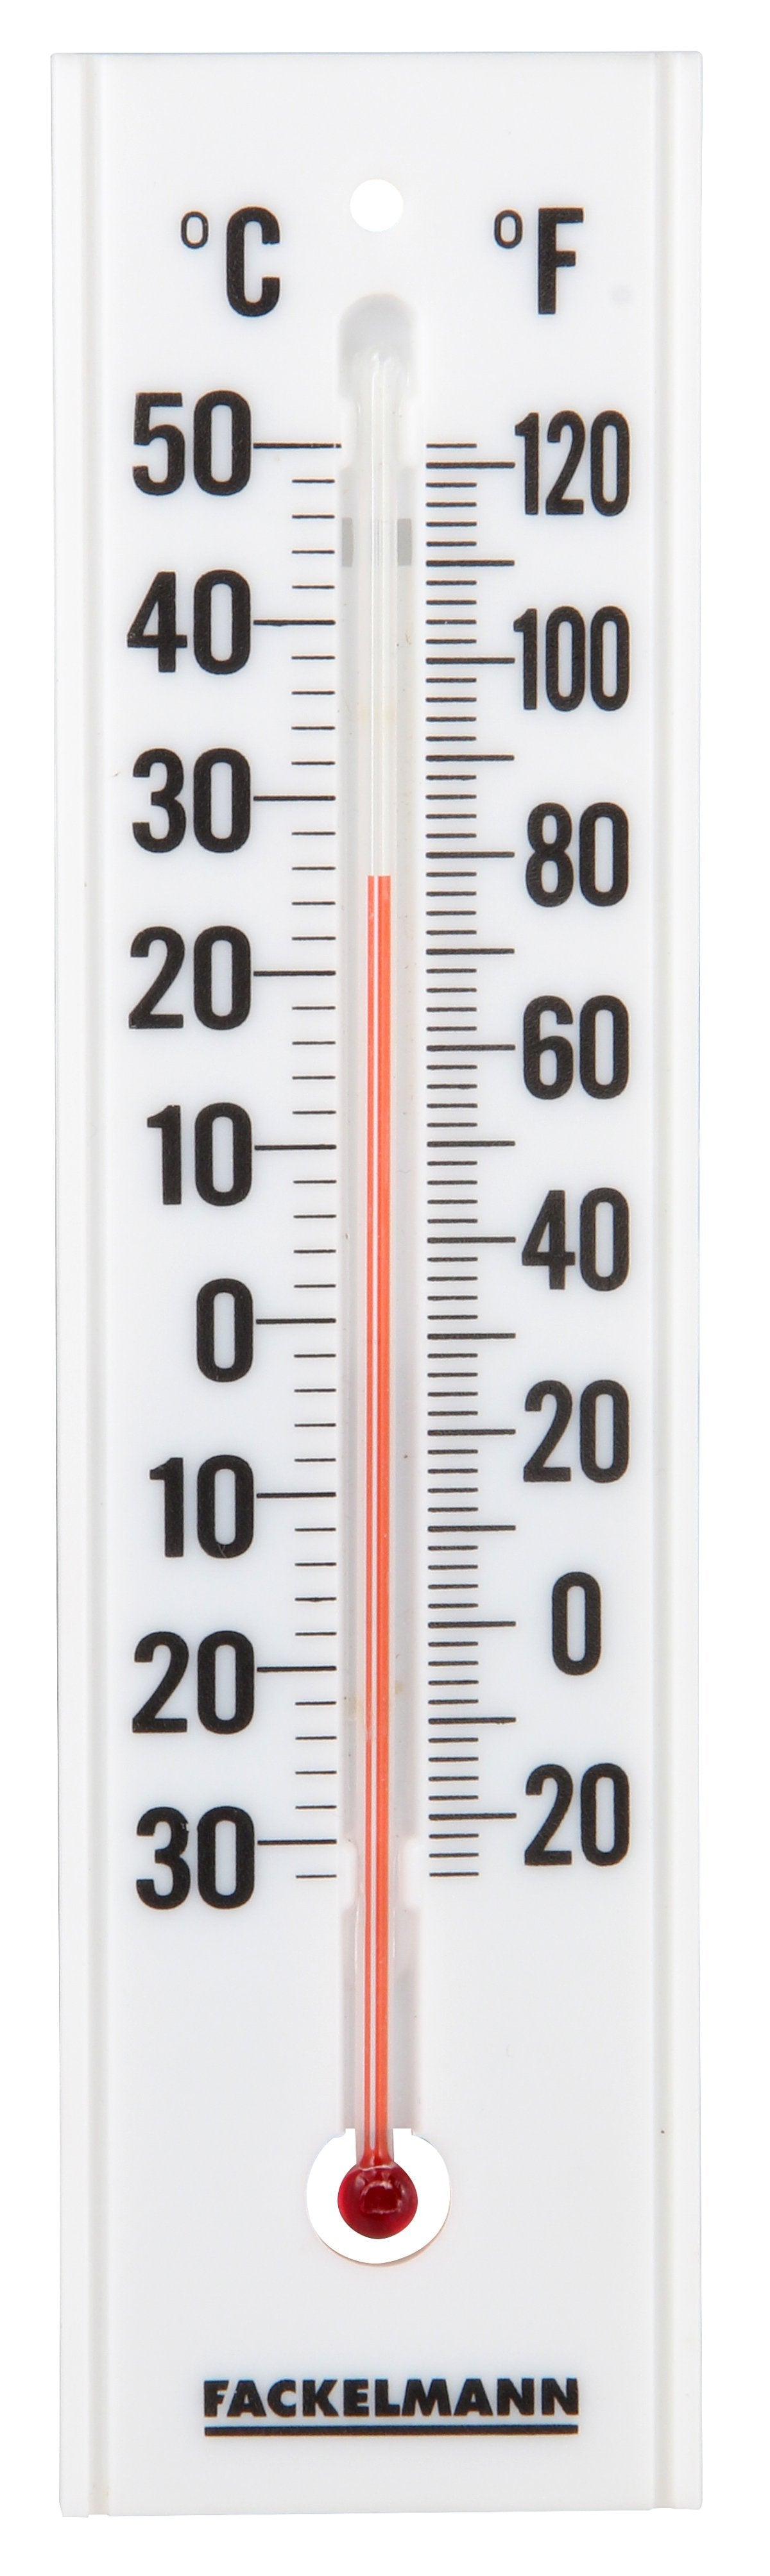 Fackelmann Thermometer